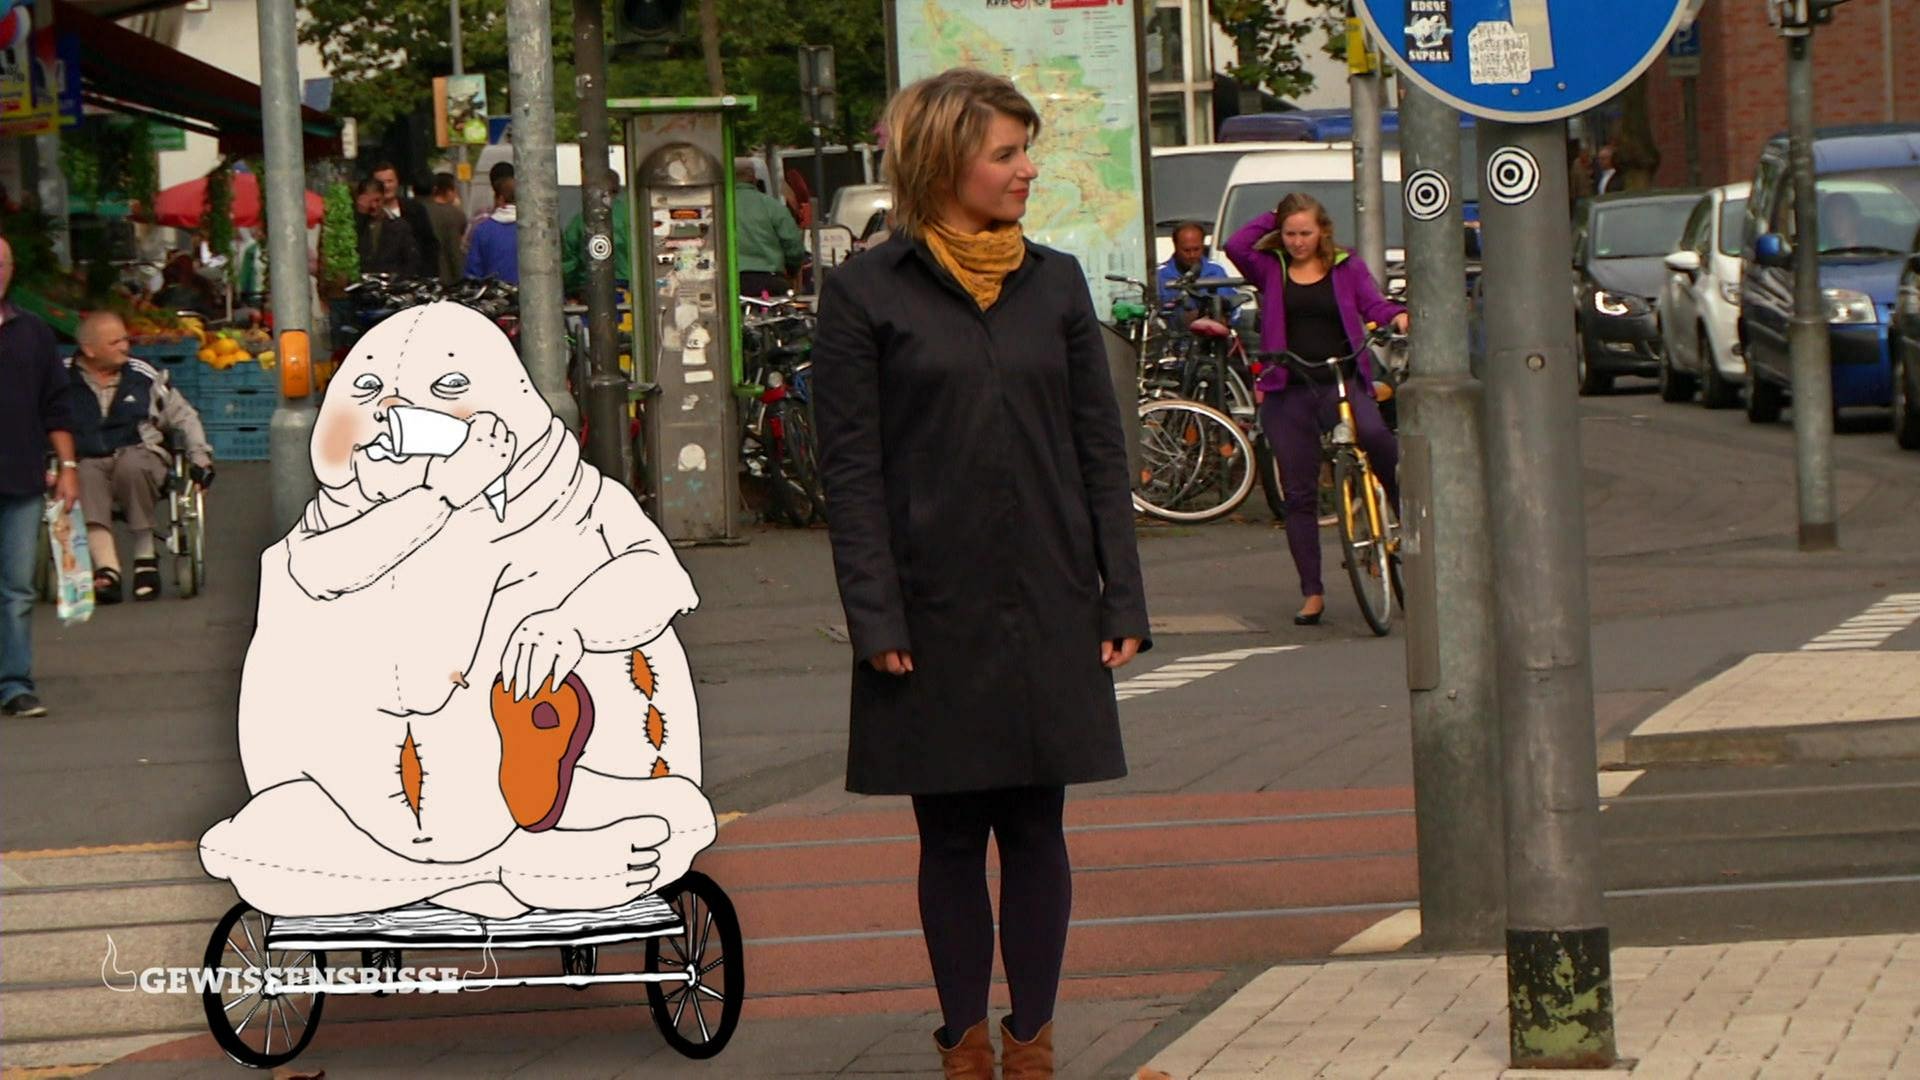 Die Moderatorin steht an einer Straße, neben ihr die Zeichnung der personifizierten Völlerei: eine nackte, fette Person, die isst und auf einem Wagen sitzt. Am Bauch platzen Nähte.